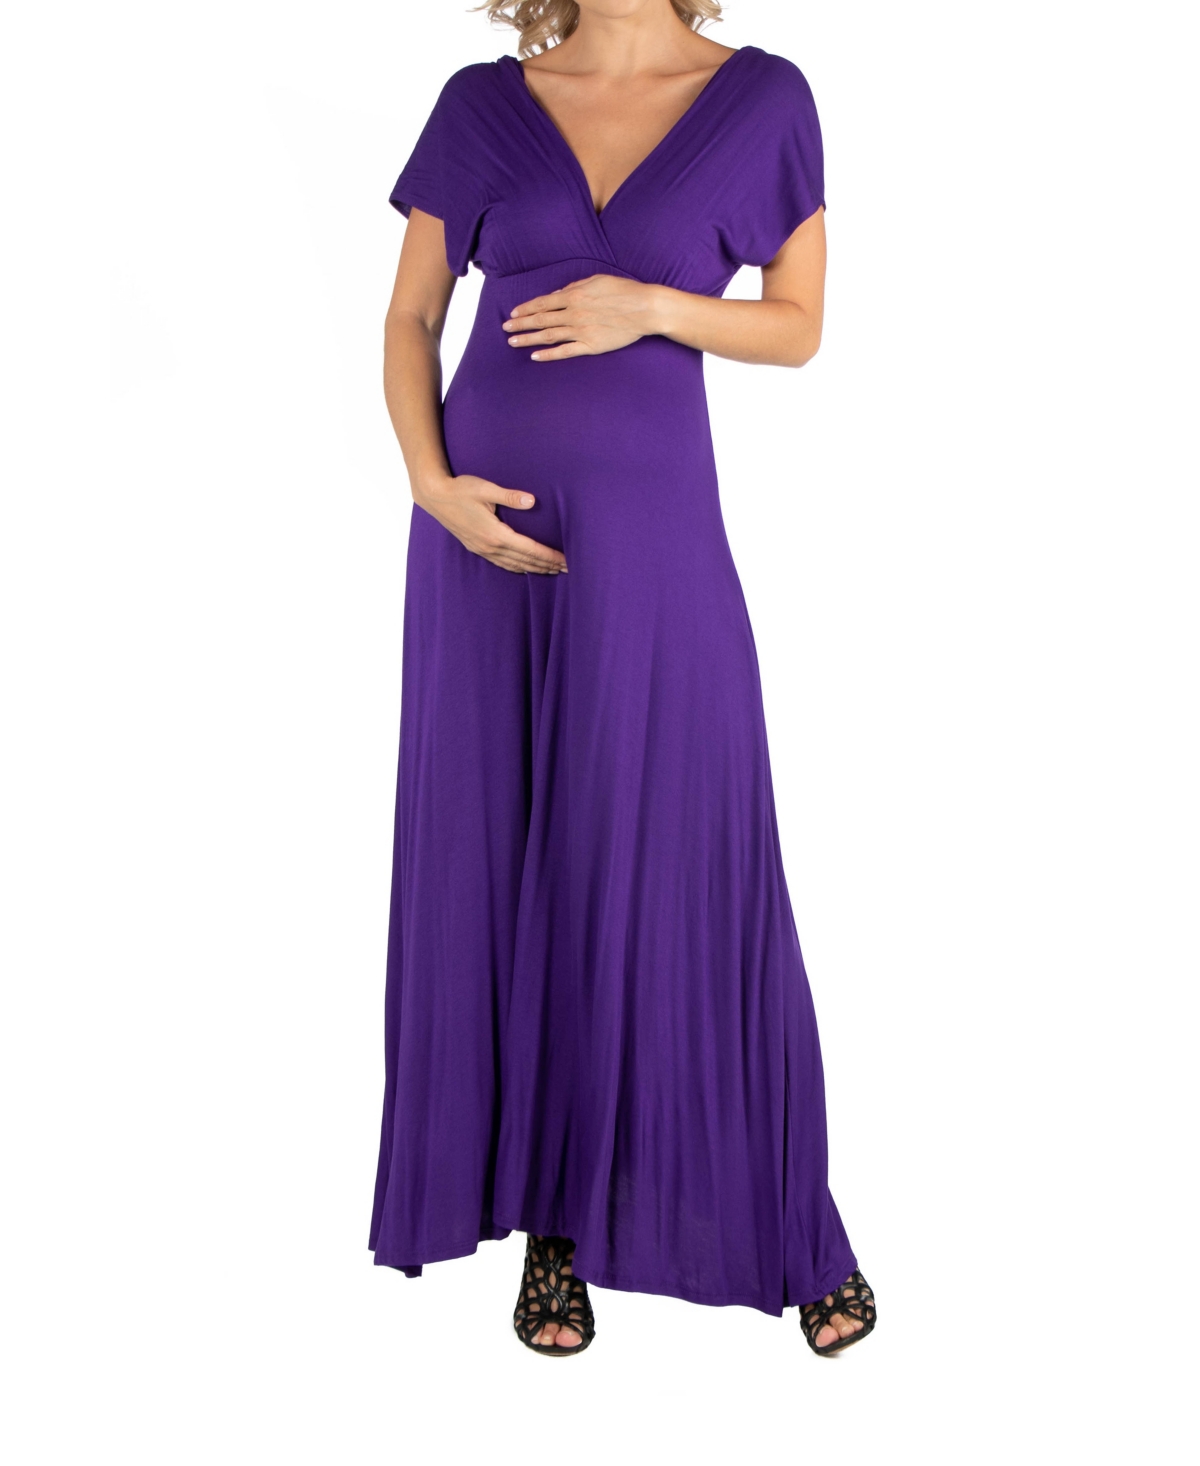 Cap Sleeve V Neck Maternity Maxi Dress - Wine